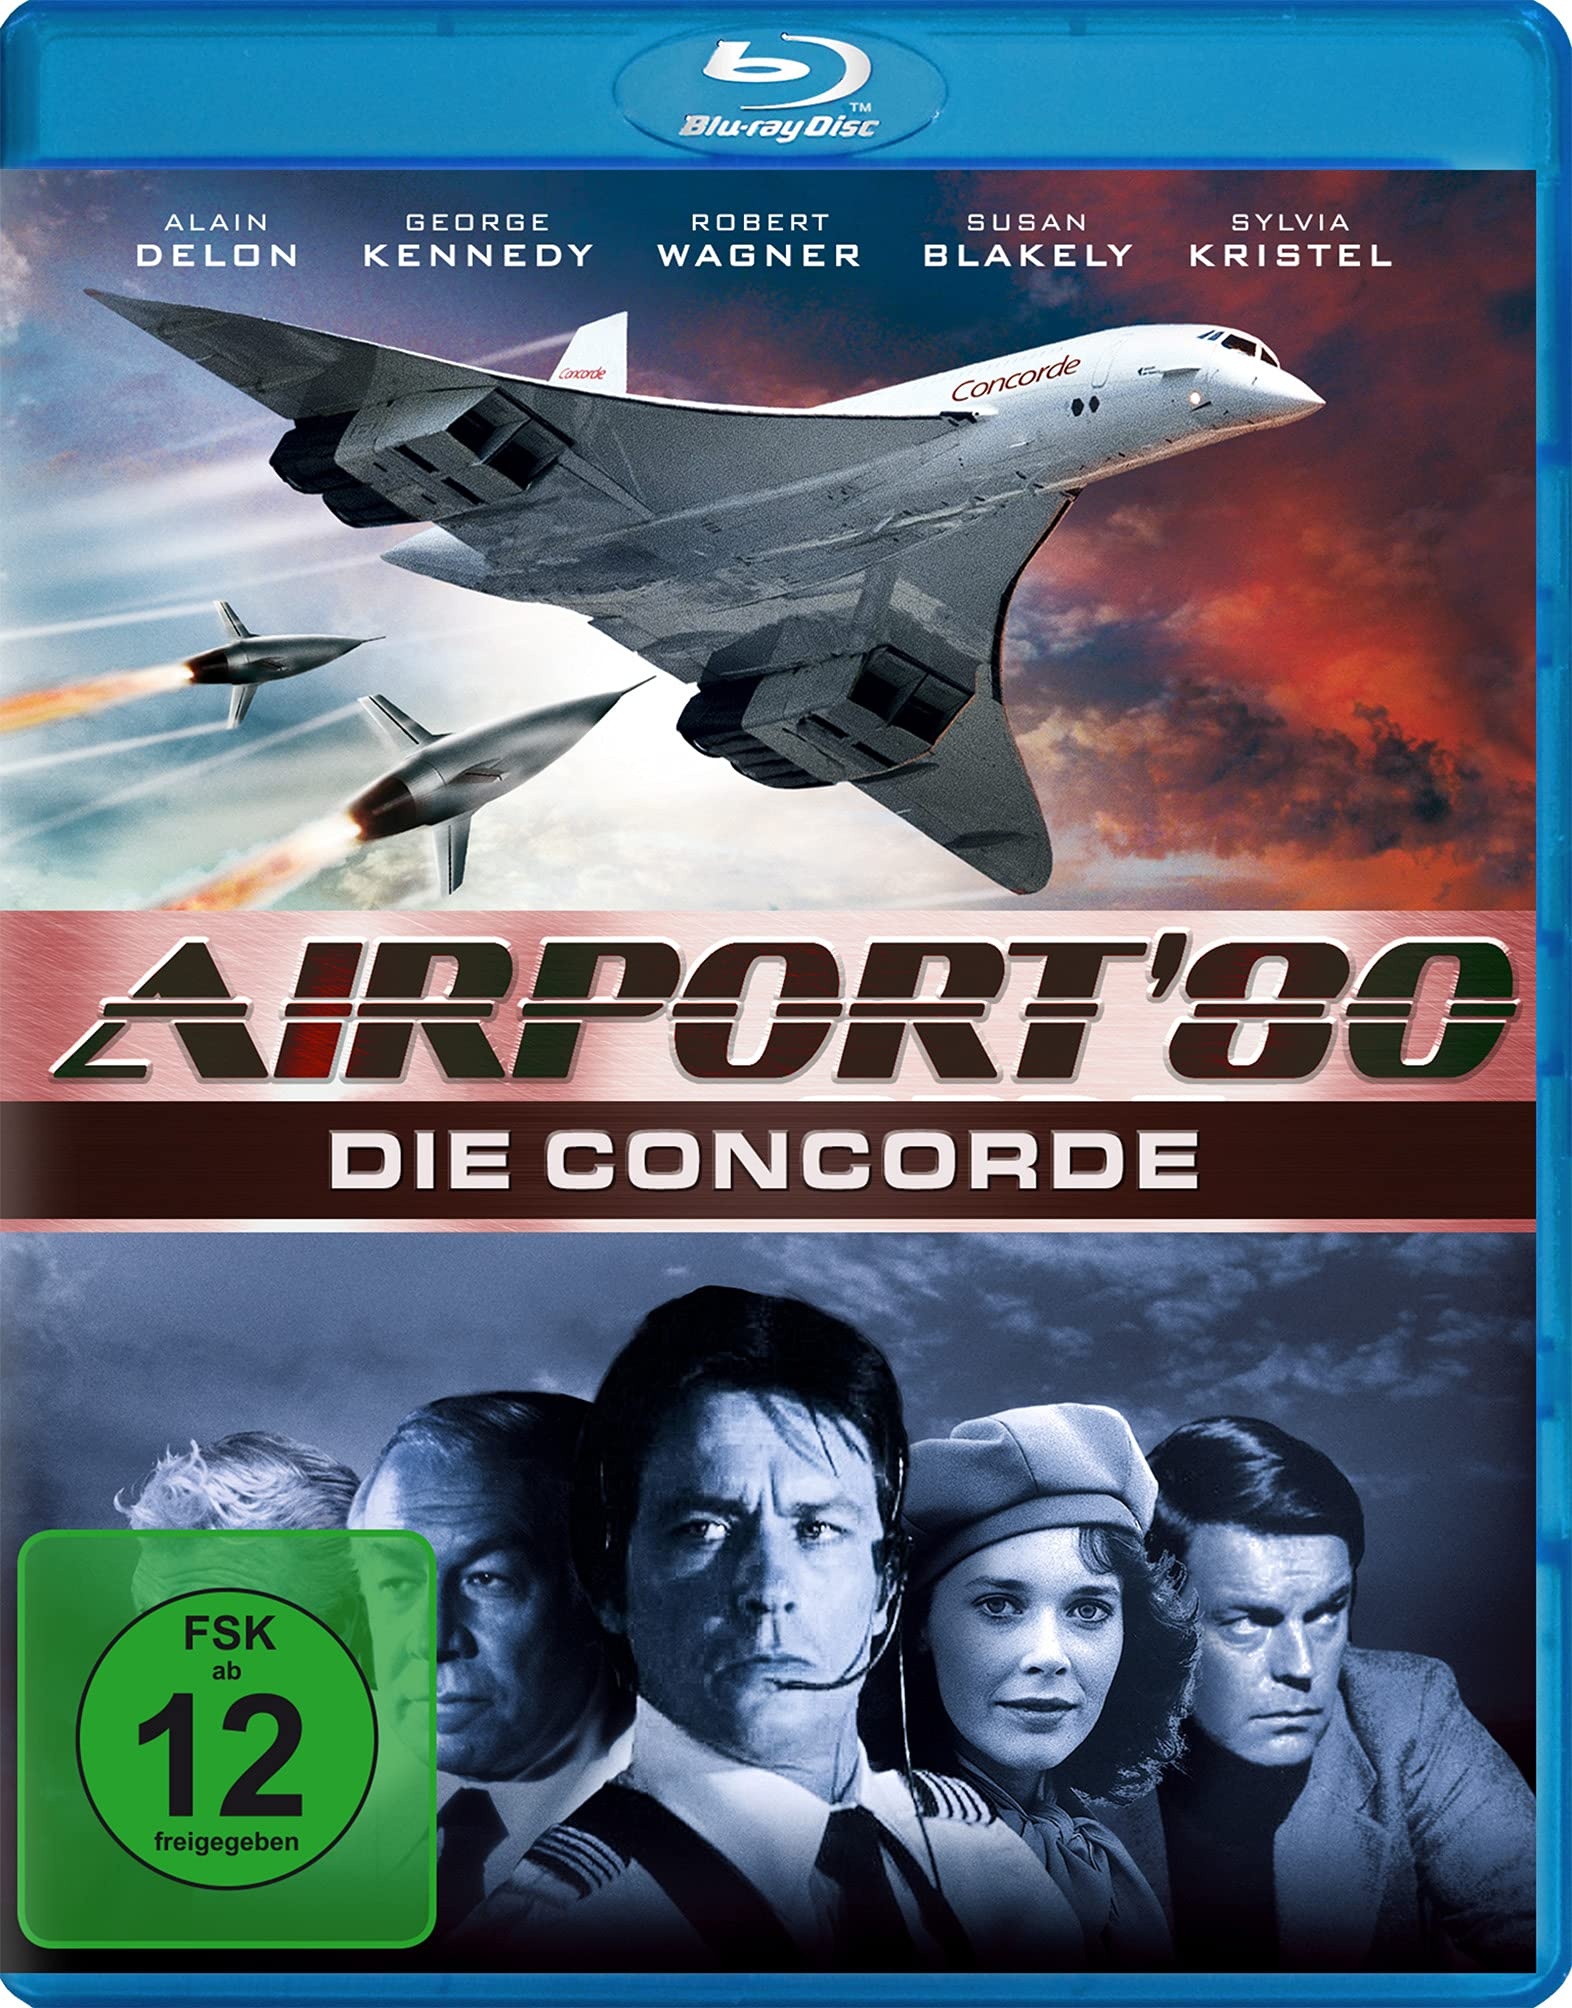 Airport '80 - Die Concorde [Blu-ray] (Neu differenzbesteuert)